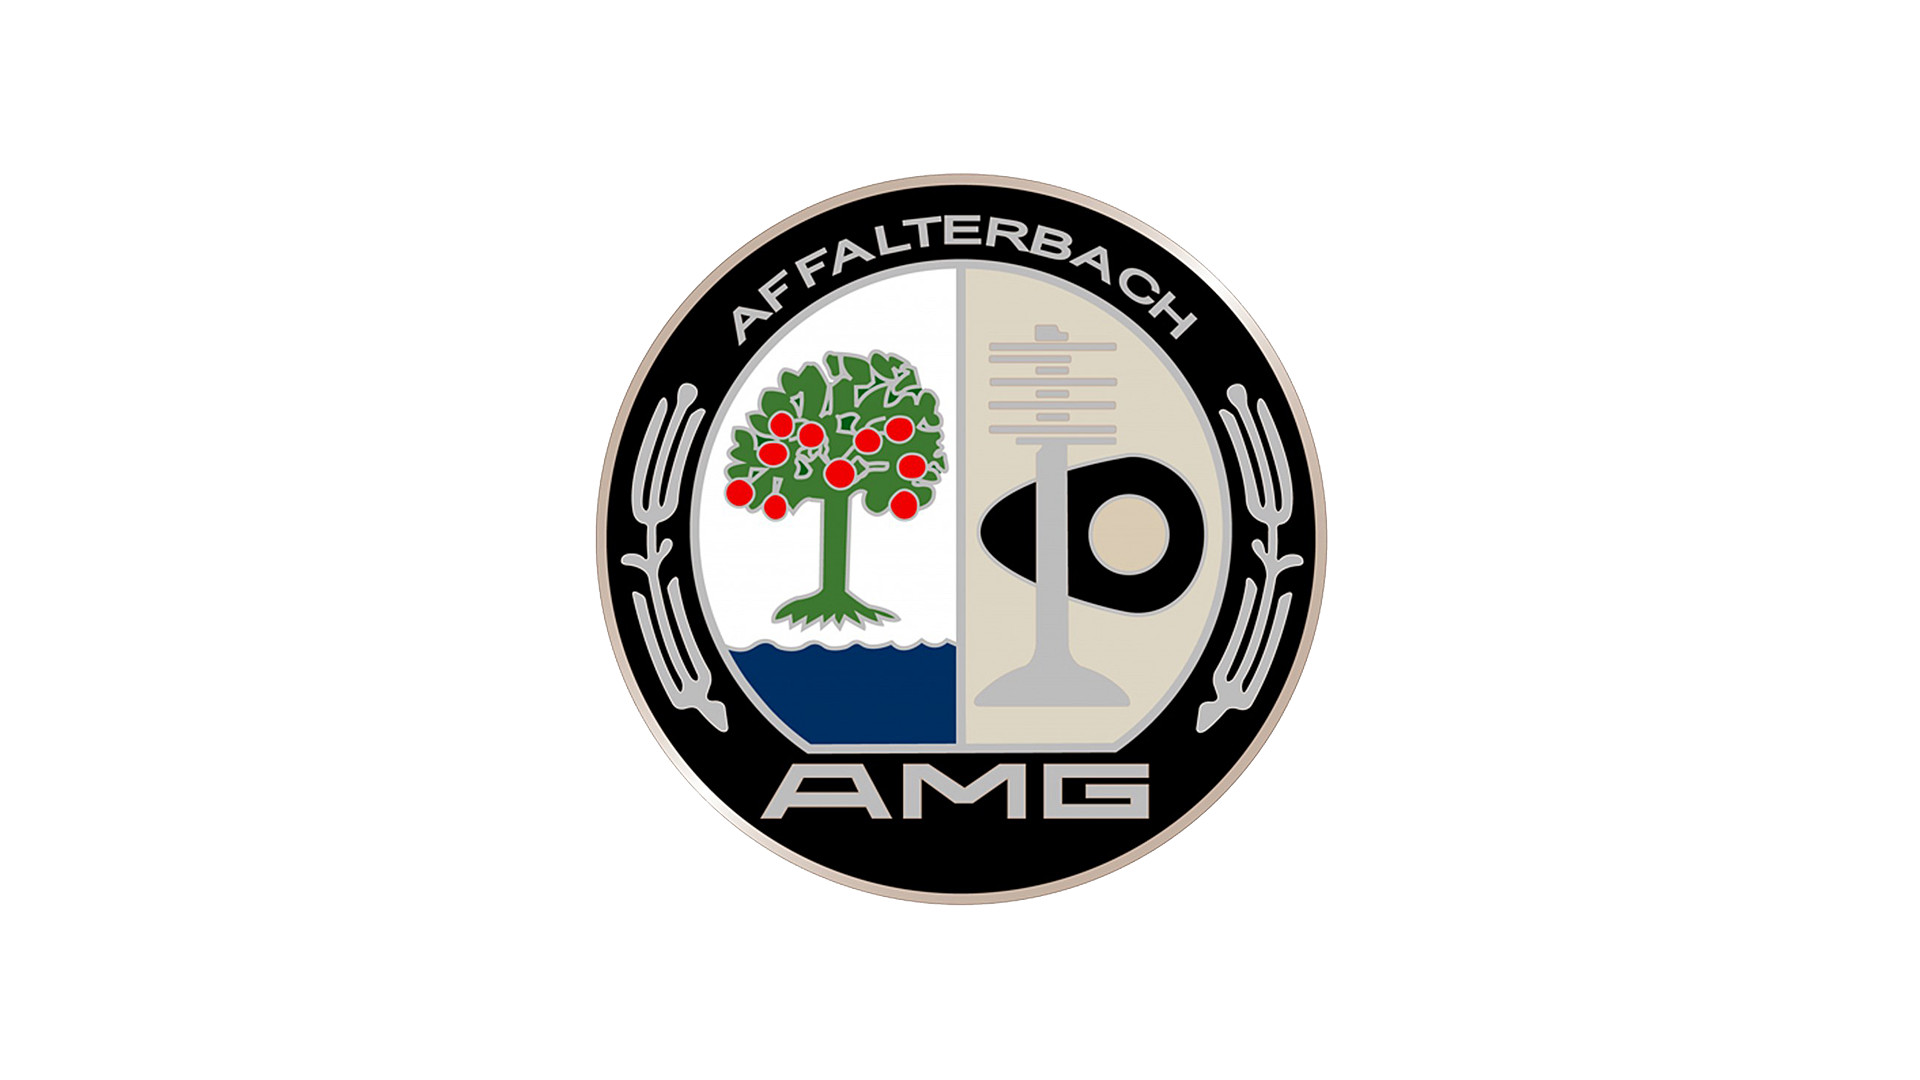 amg logo wallpaper,producto,emblema,diseño,fuente,gráficos